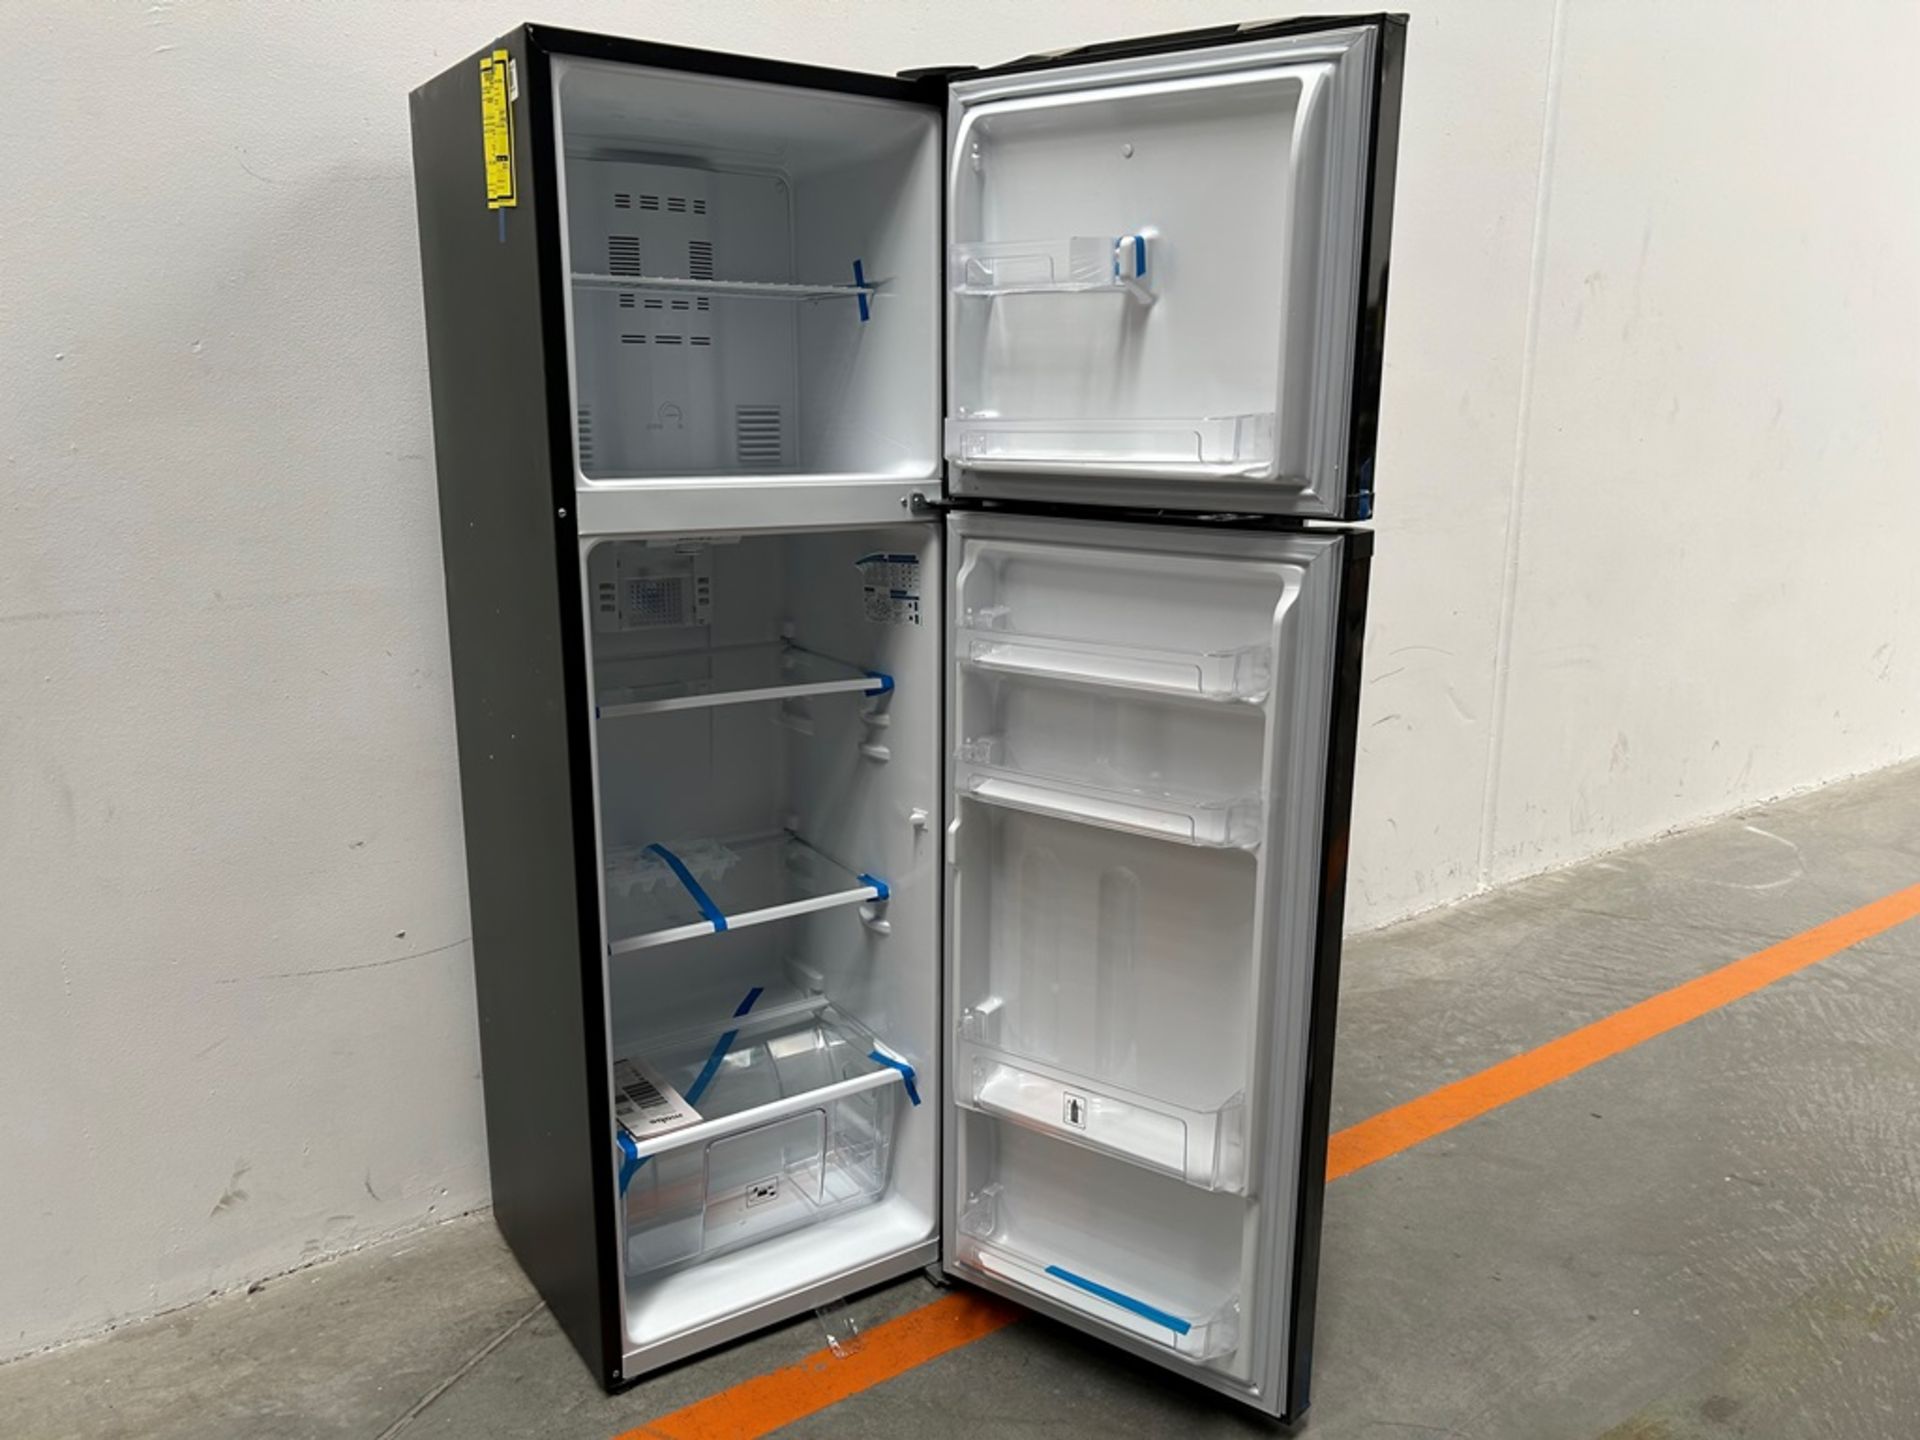 Lote de 2 refrigeradores contiene: 1 refrigerador Marca MABE, Modelo RMA250PVMRP0, Serie 13859, Col - Image 4 of 18